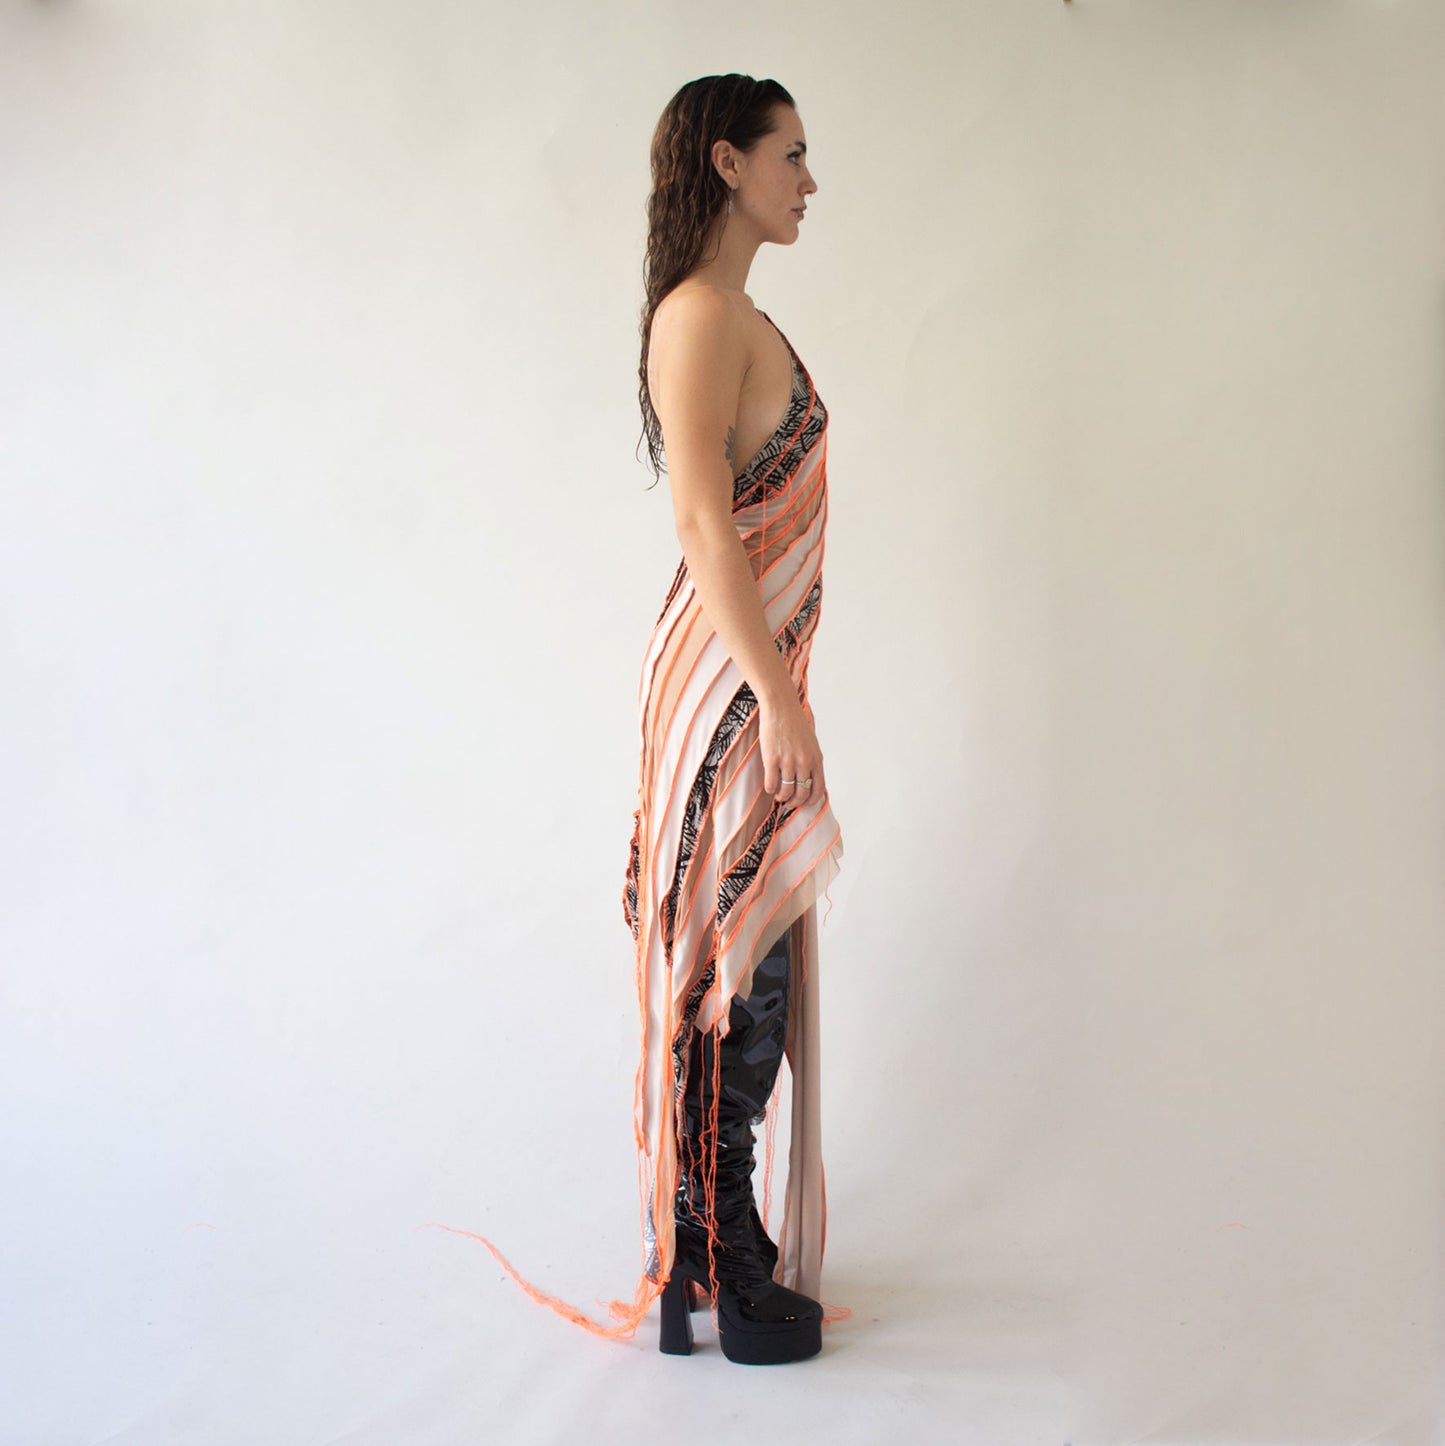 Patchwork stretch dress, size s/m, unique style